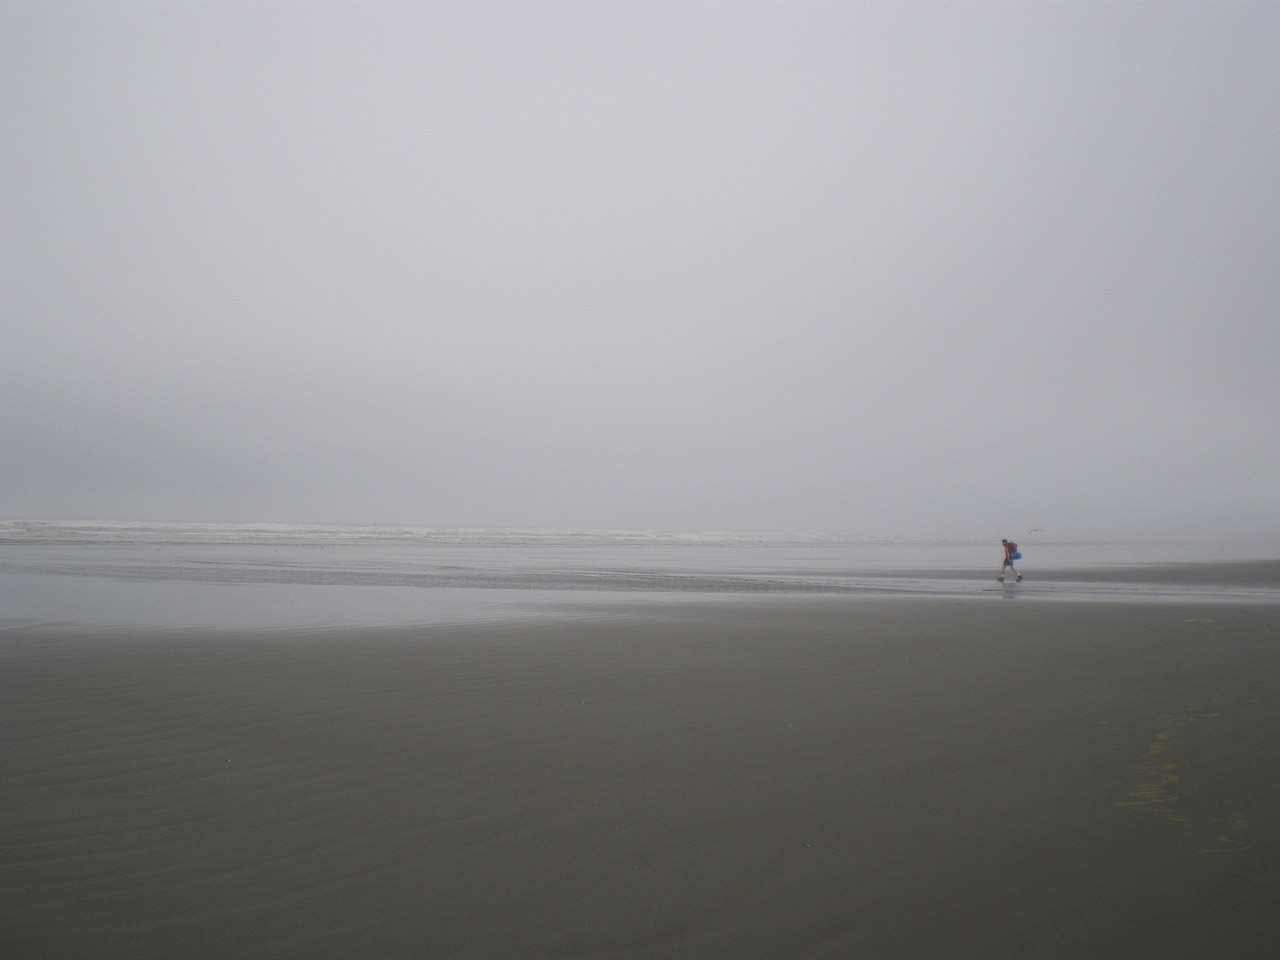 A lone boy hiking on a desolated beach